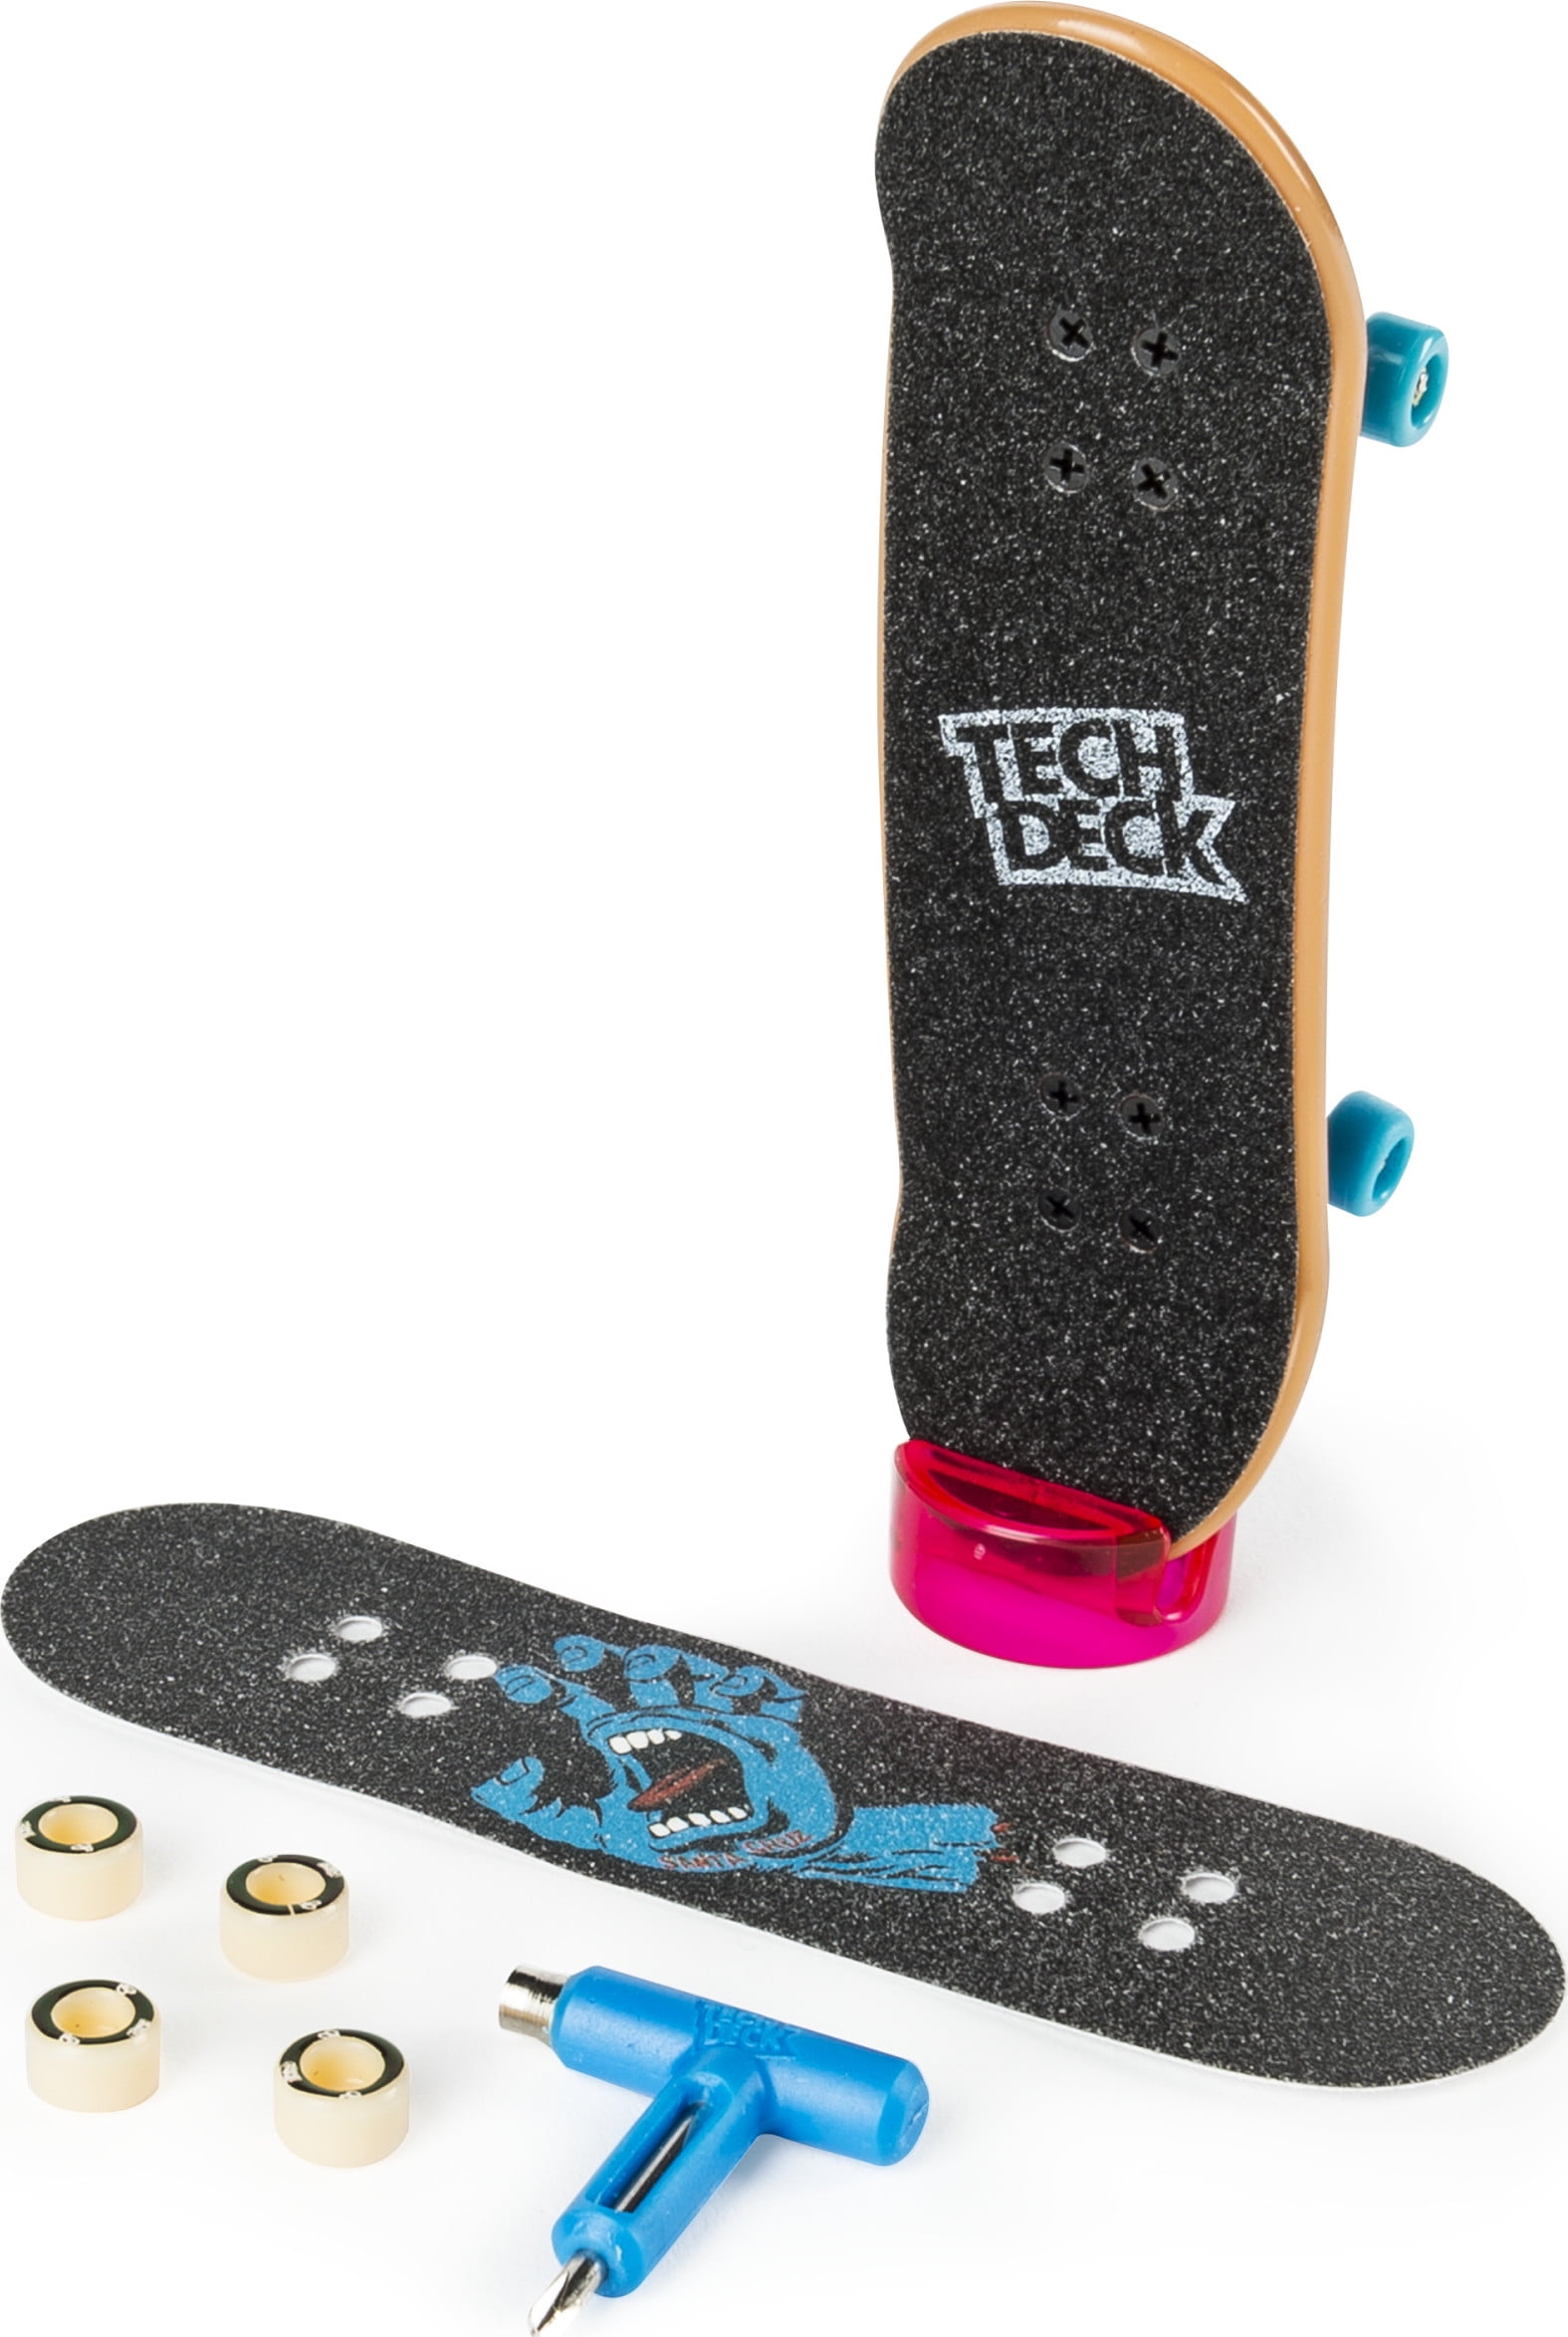 W Style 4/PK Skateboard Wall Mount No Board Included W/Hardware 